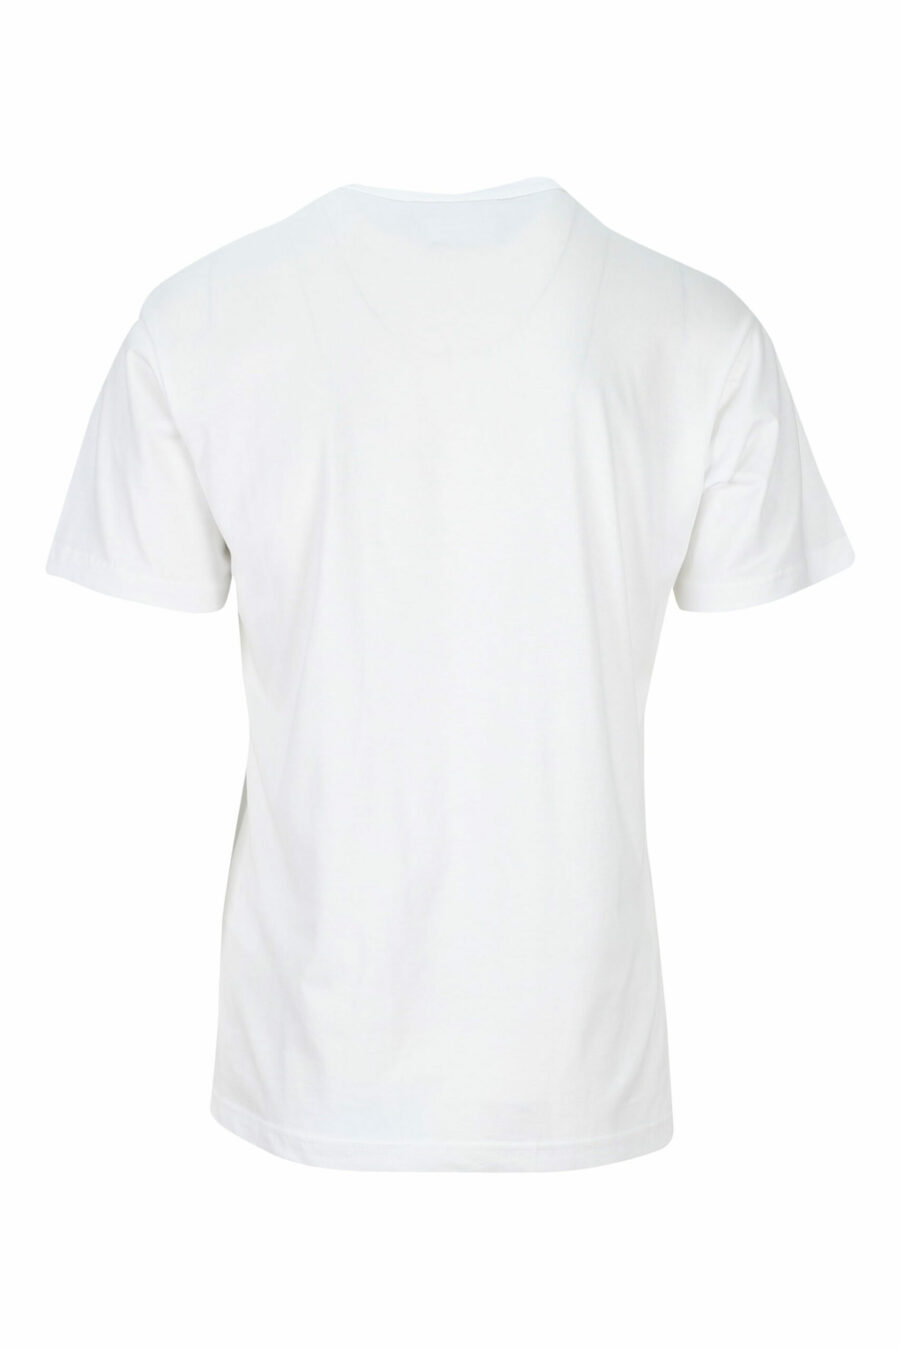 T-shirt branca com maxilogo "número da peça" a preto - 8052019468663 1 à escala